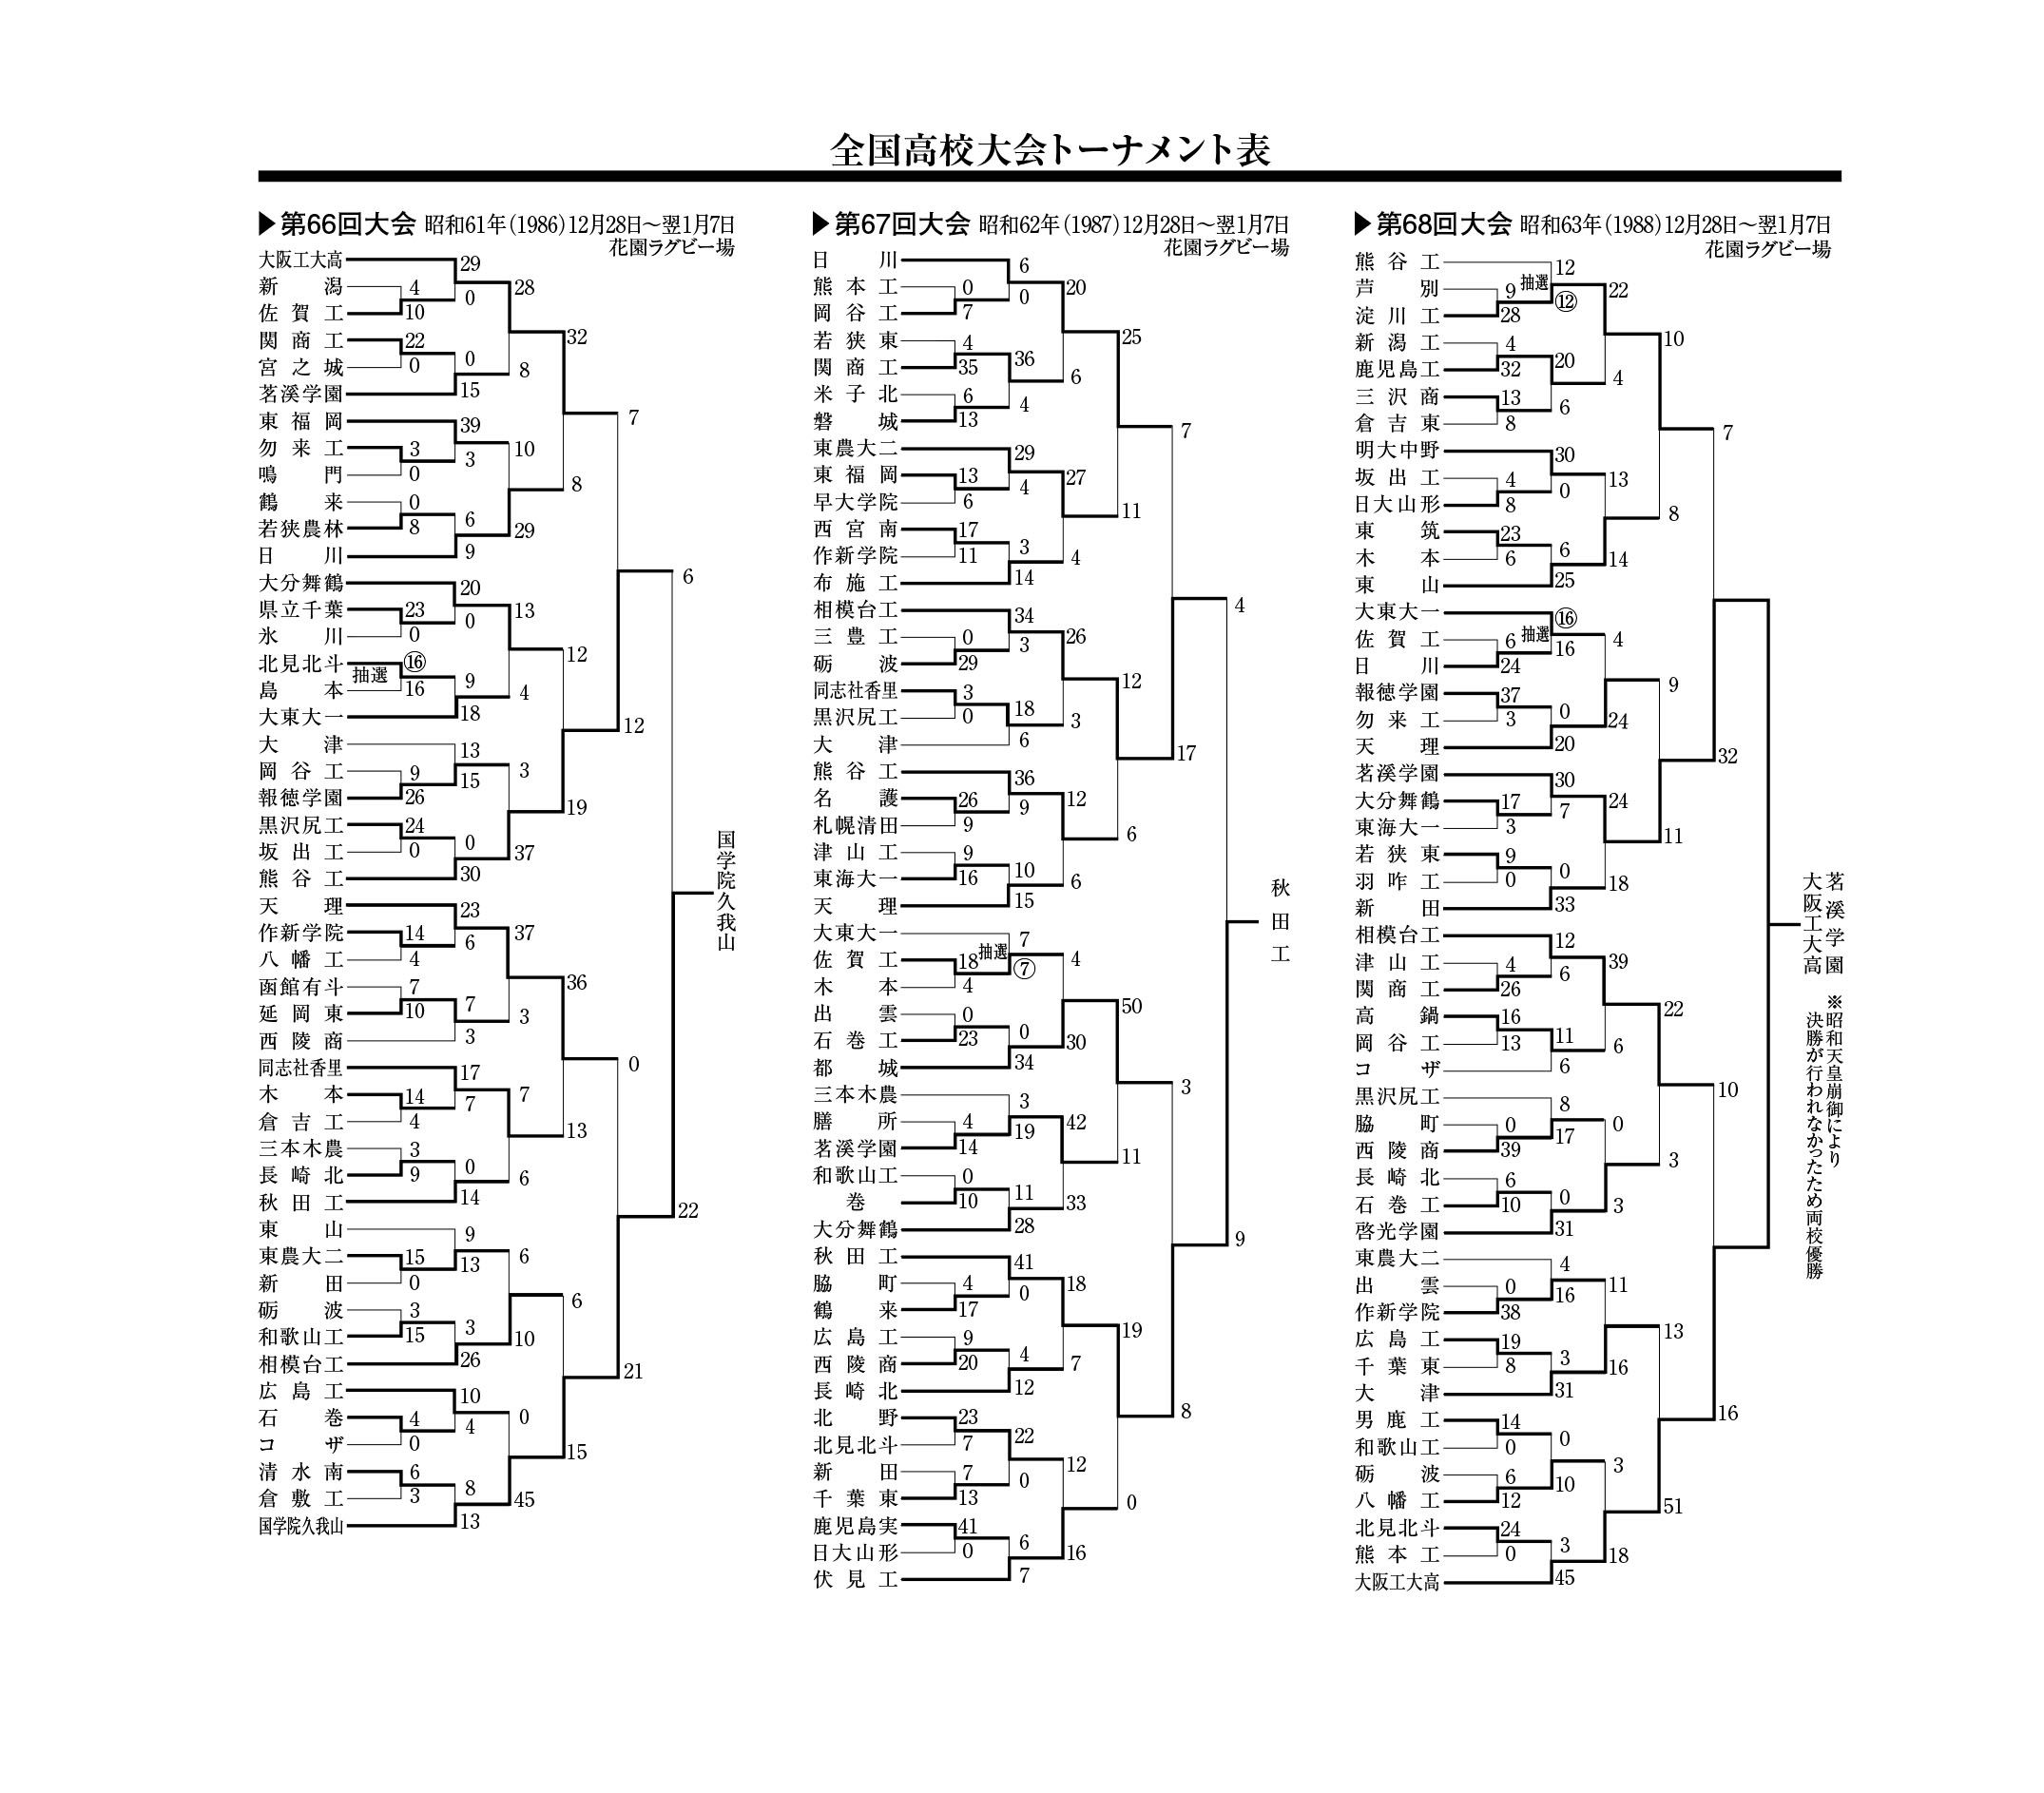 全国高校大会トーナメント表(第66回～68回)